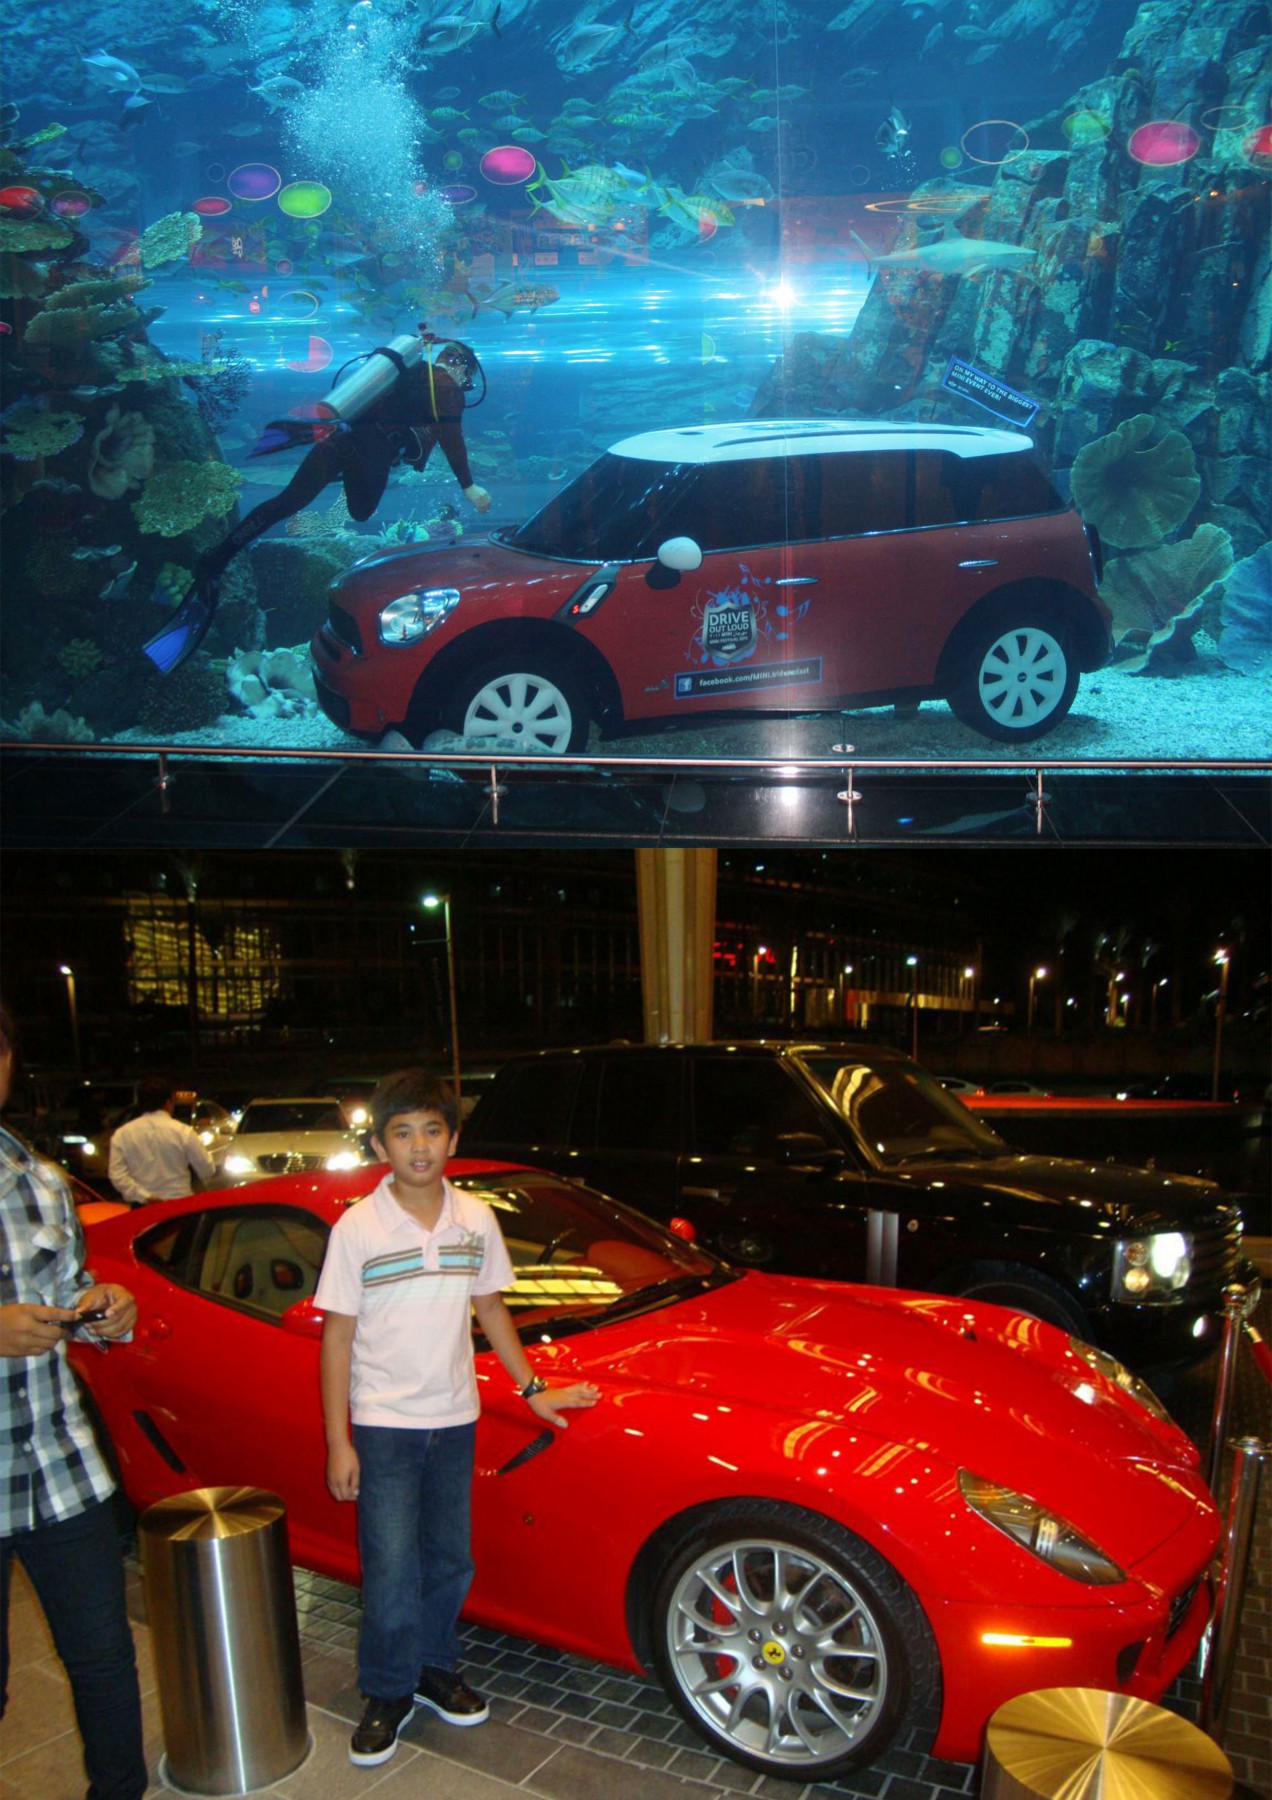 Dubai Mall Car show in Aquarium The Mall Of Dubai UAE Beautiful Global